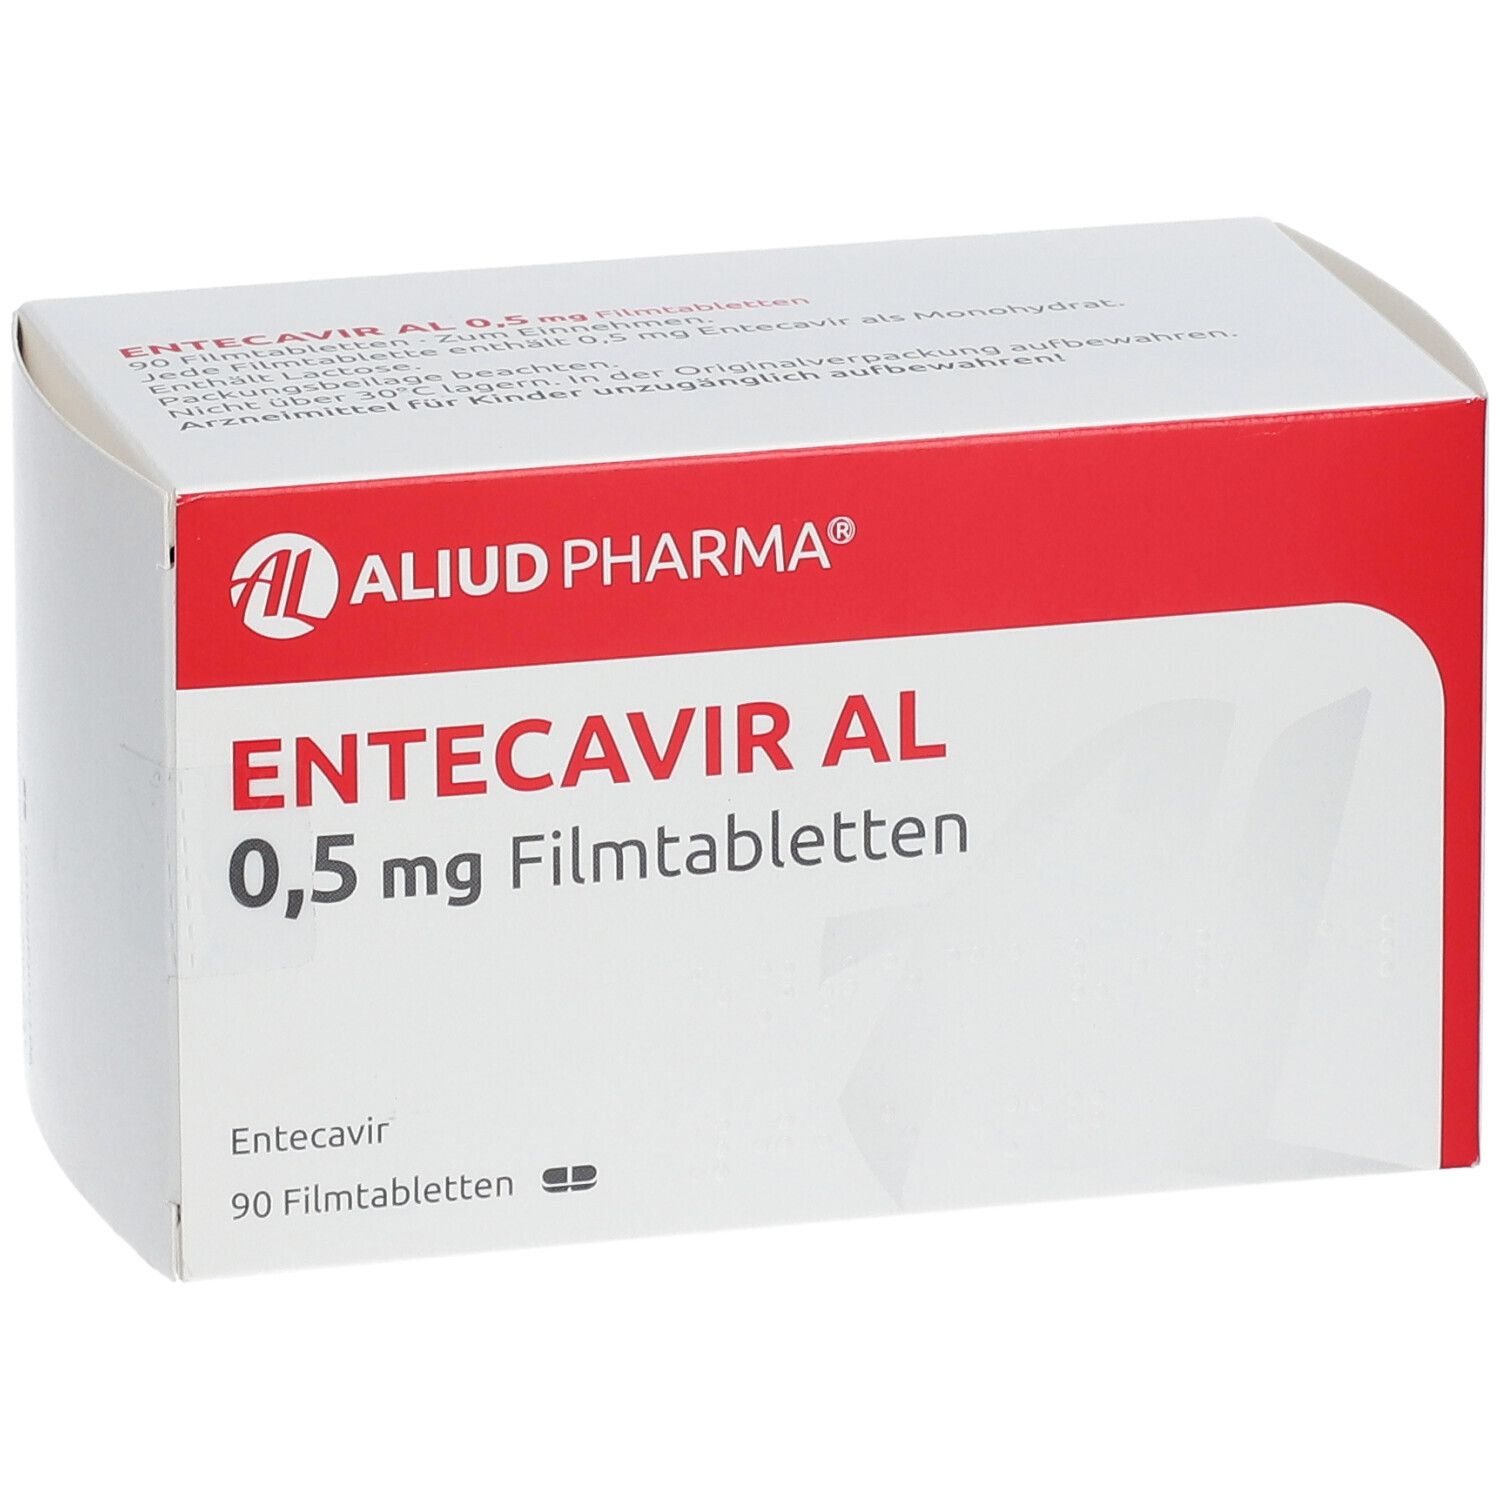 ENTECAVIR AL 0,5 mg Filmtabletten